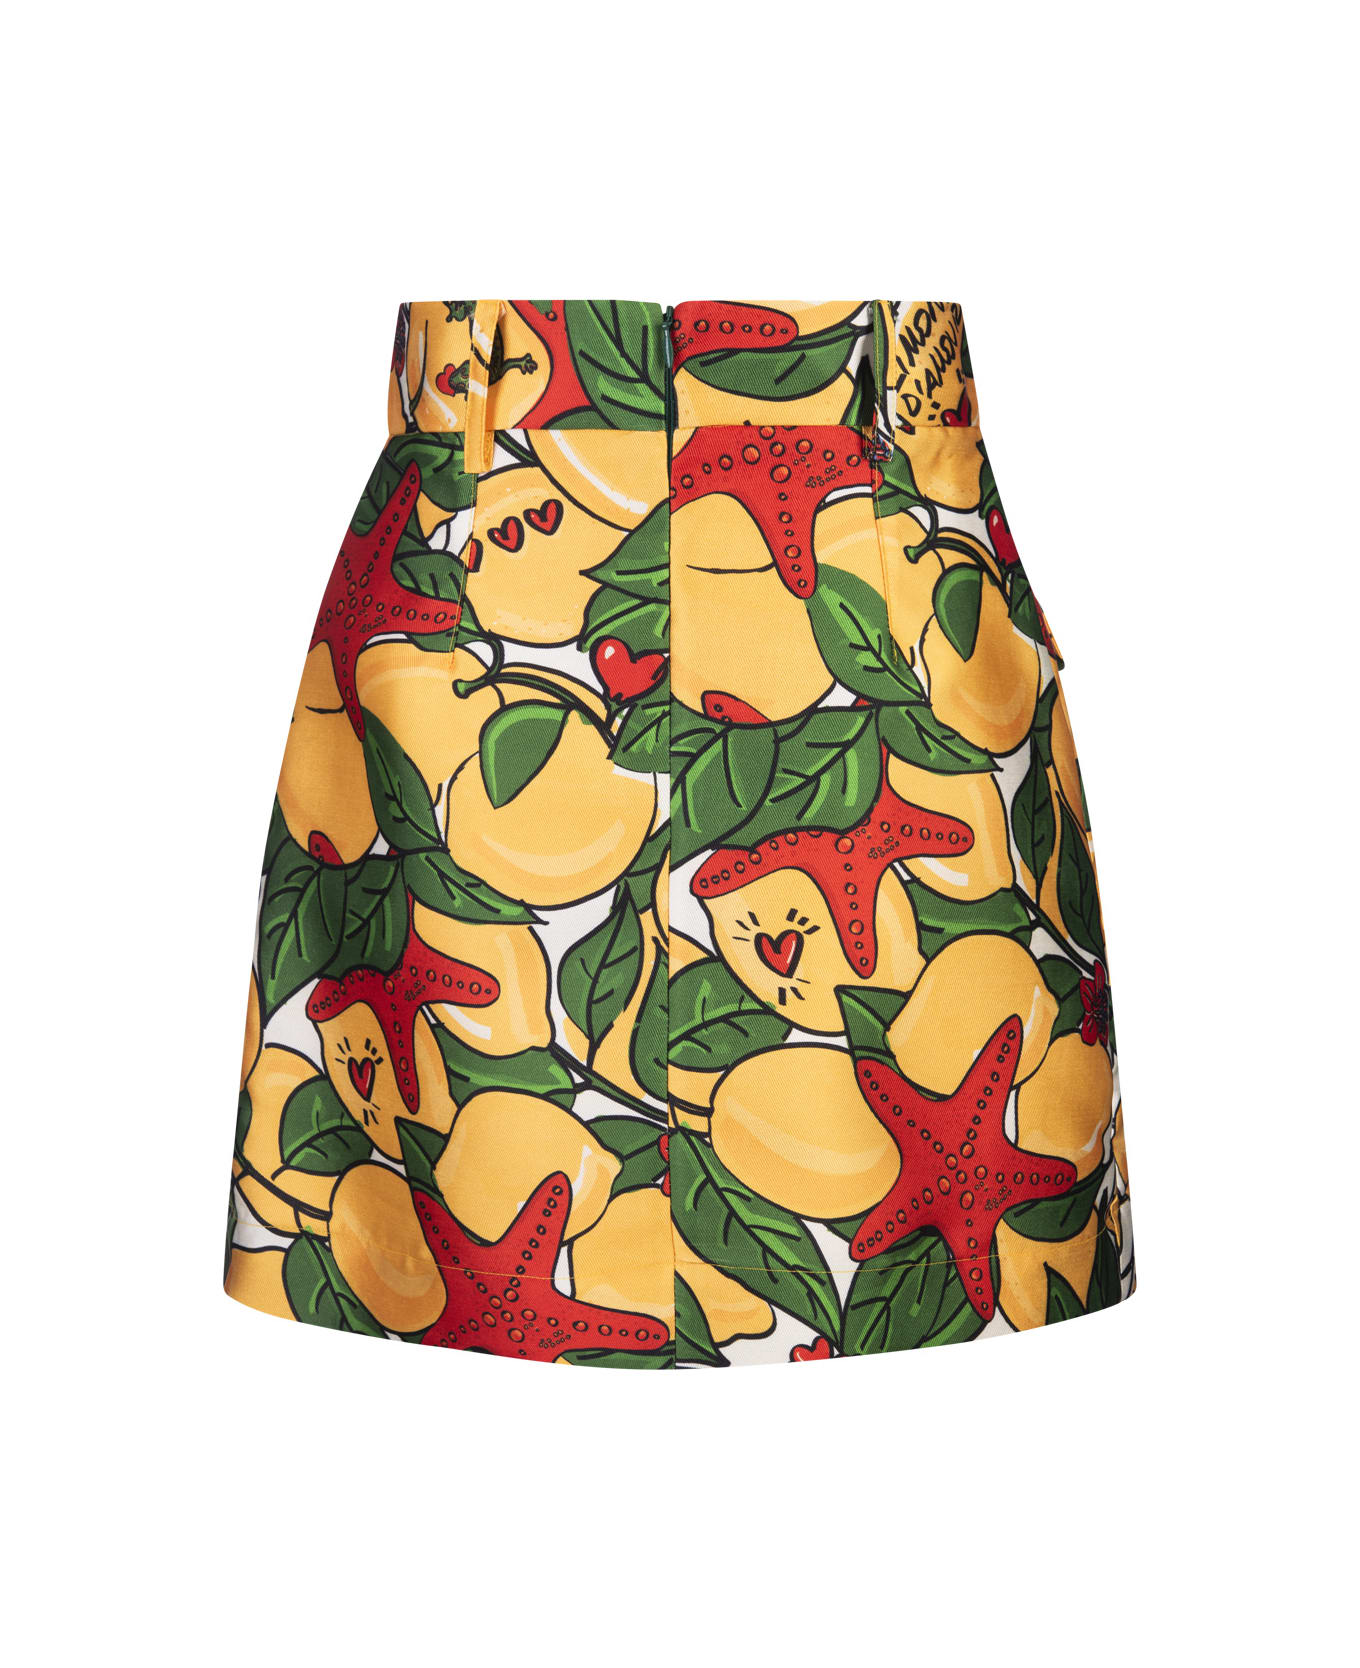 Alessandro Enriquez Short Skirt With Lemons Print - Green